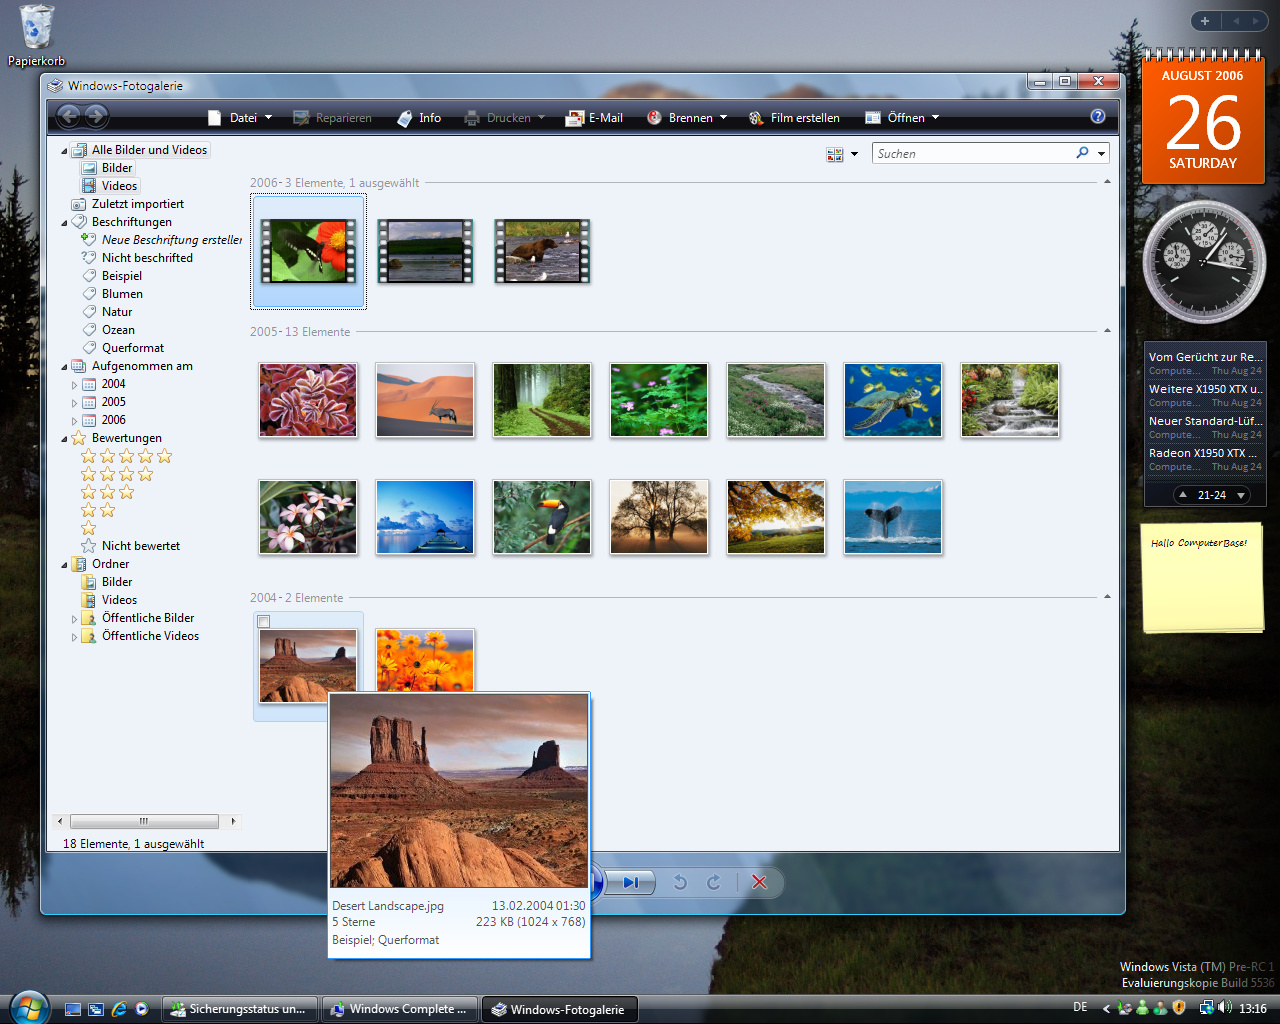 Windows Vista Build 5536 - Fotogalerie